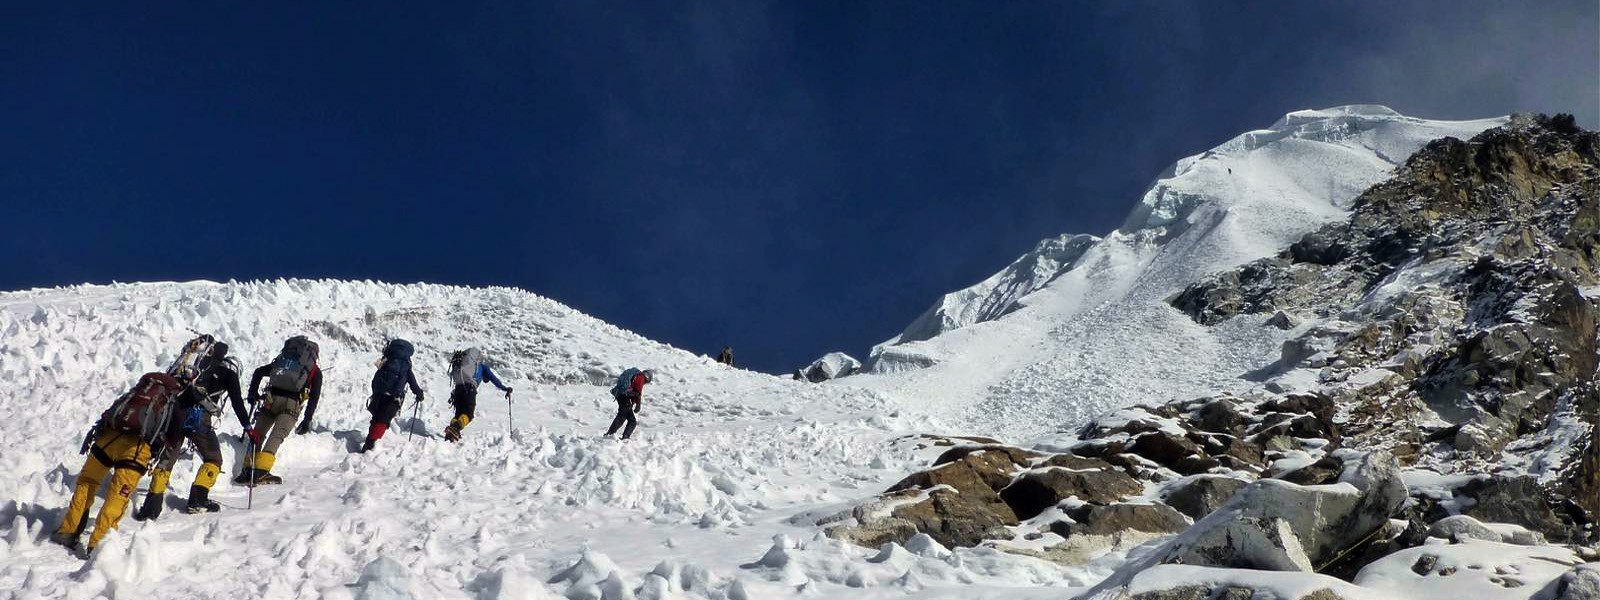 Mera Peak and Sherpani Col Pass Trekking